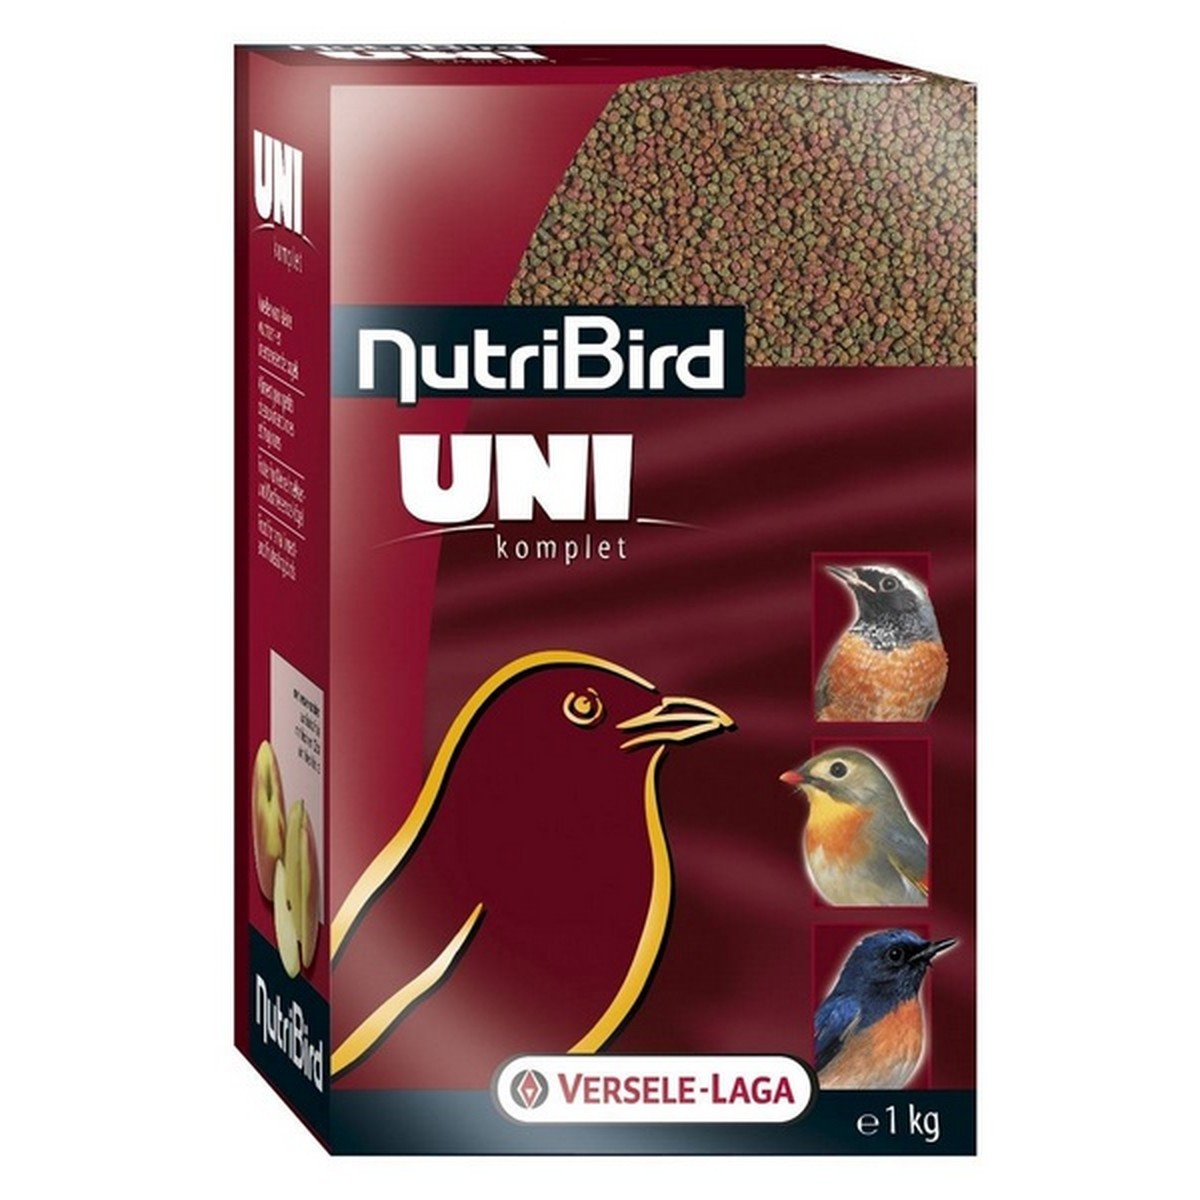   Nutribird Uni Komplet frugivore/insectivore 1kg  1kg